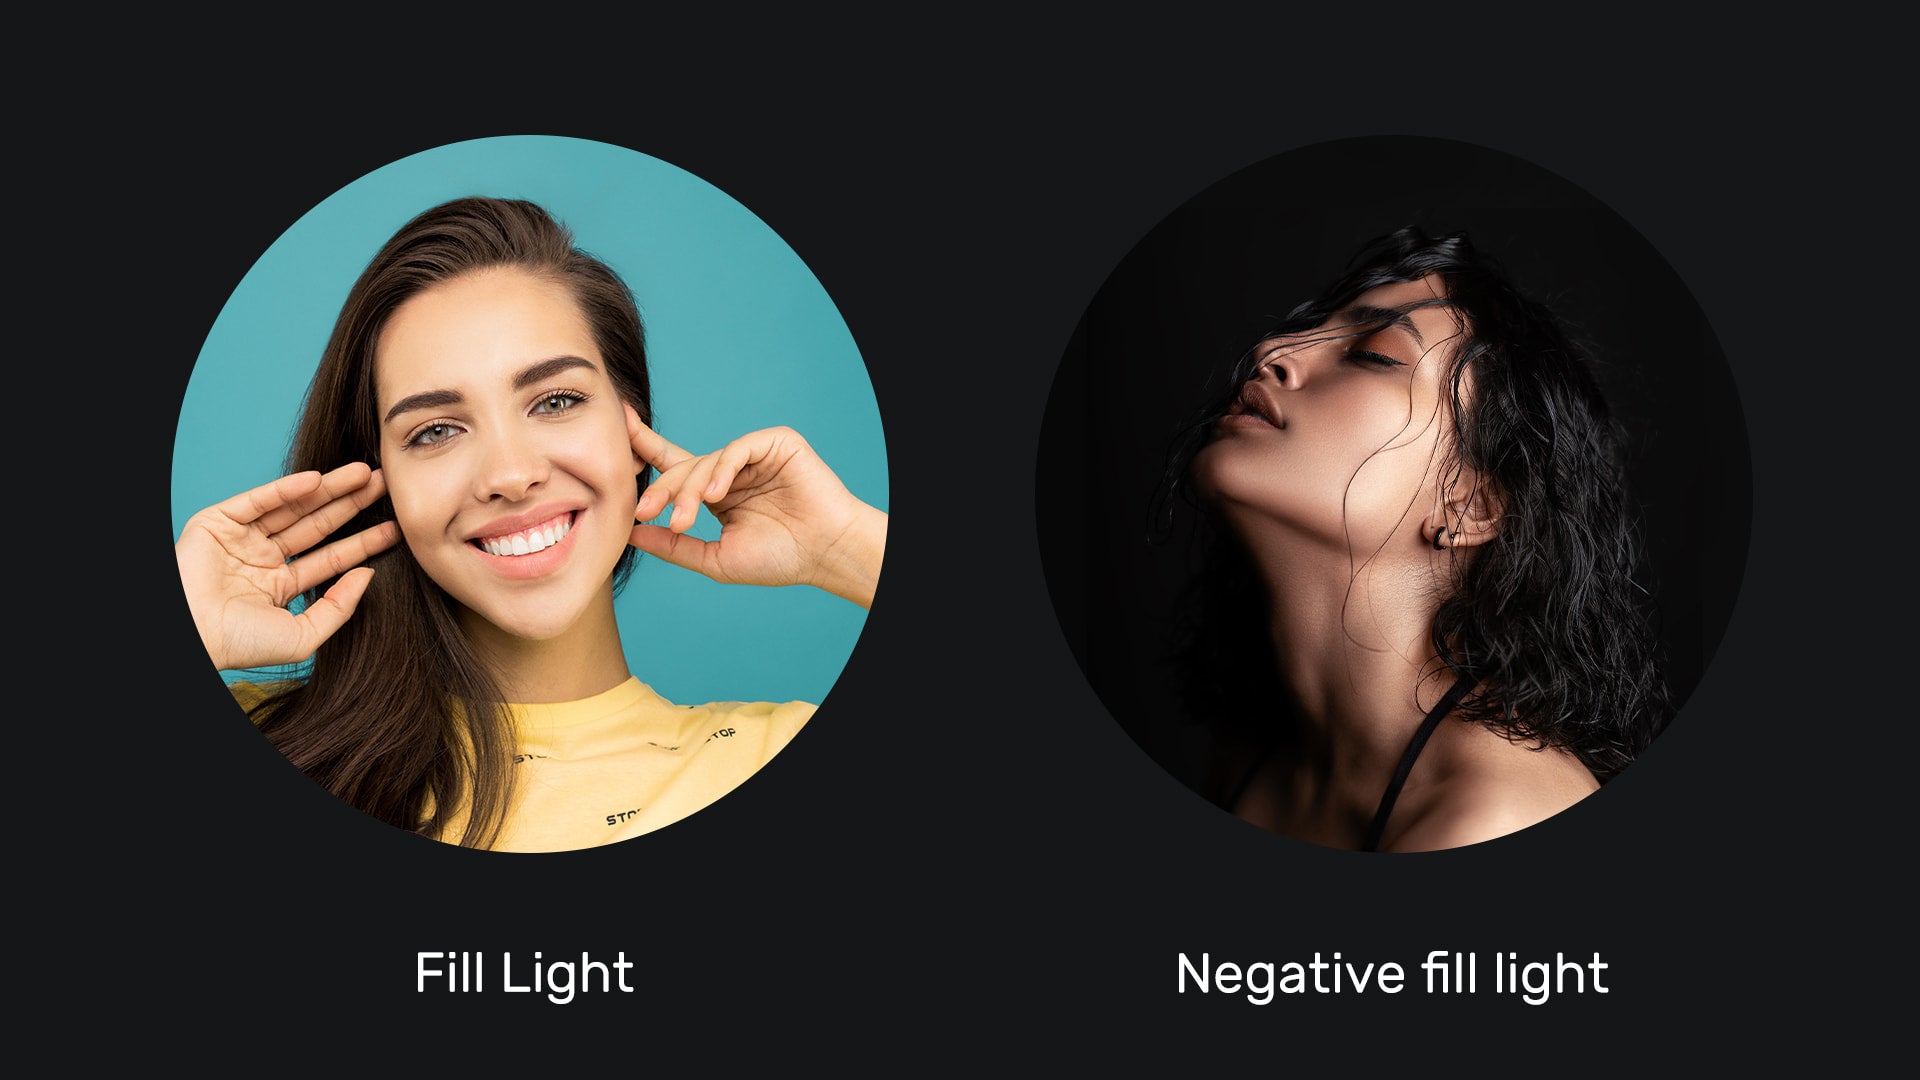 Fill light vs negative fill light